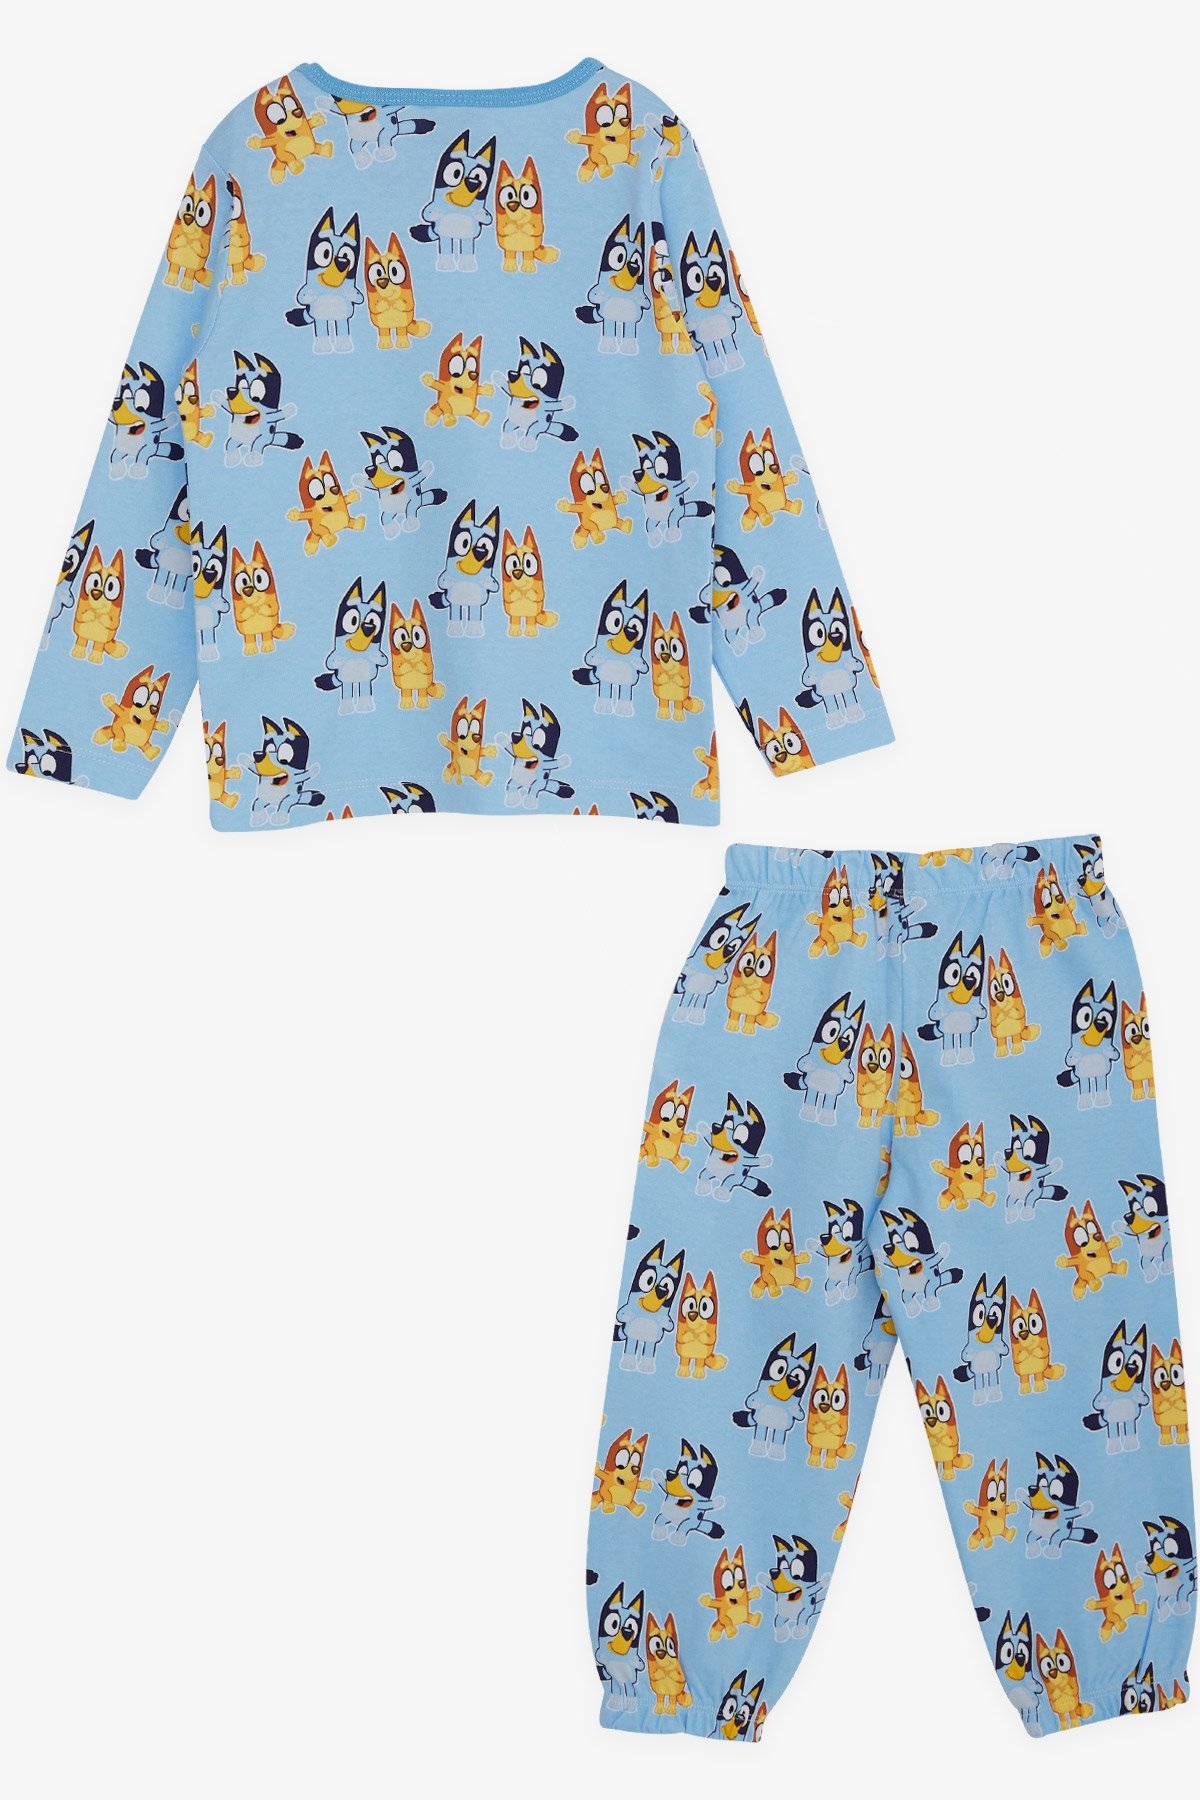 Erkek Bebek Pijama Takımı Mutlu Köpekcikler Desenli Açık Mavi 9 Ay-1.5 Yaş  - Yumuşak Kumaşlı Çocuk Pijamaları | Breeze